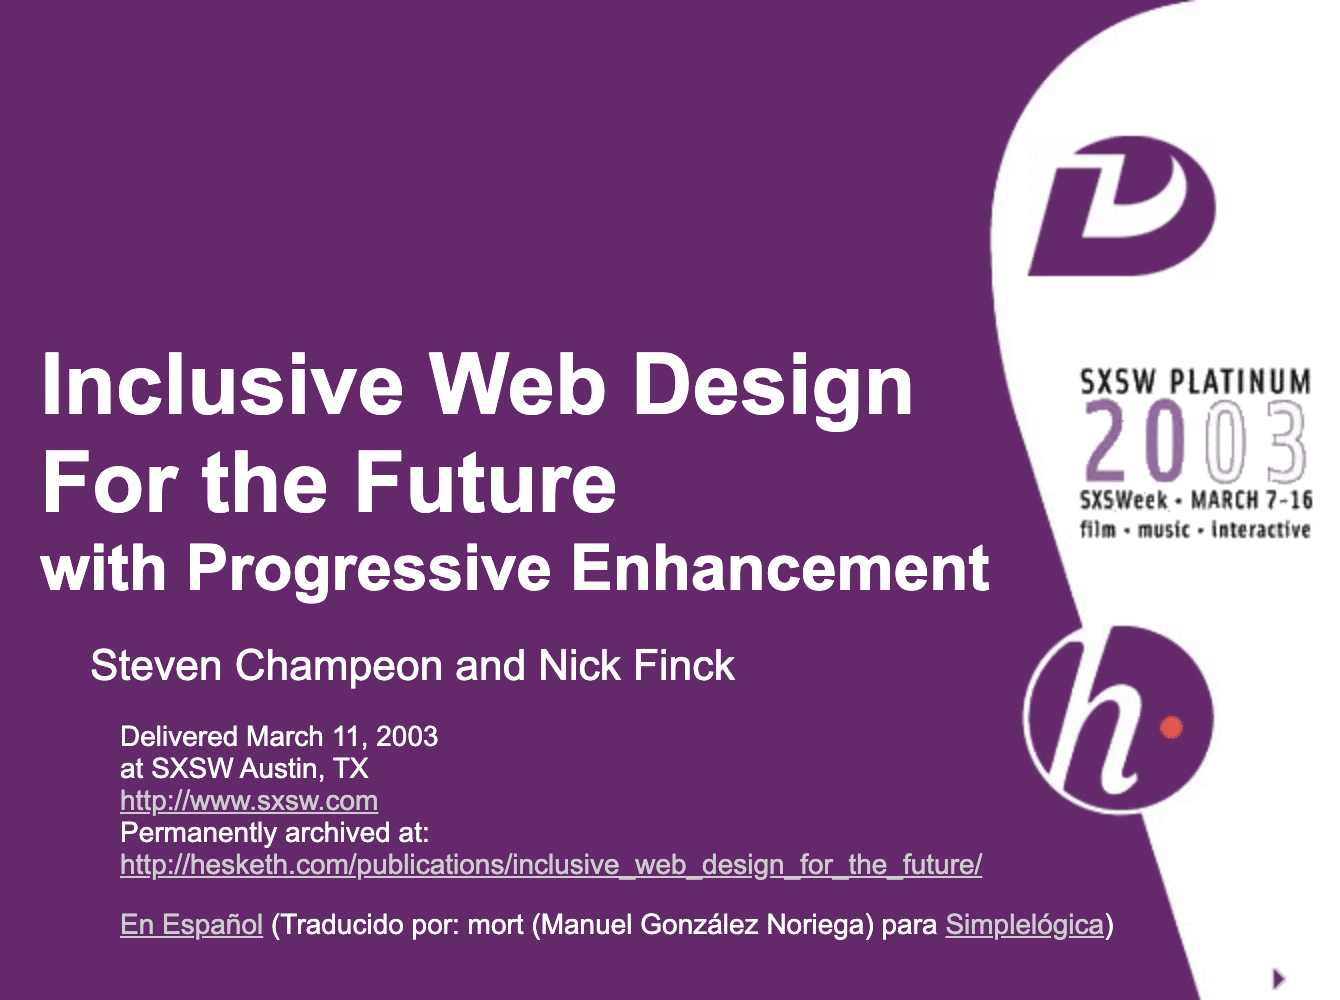 Diseño web inclusivo para el futuro con mejoras progresivas. Diapositiva de título de la presentación original de Finck y Champeon.